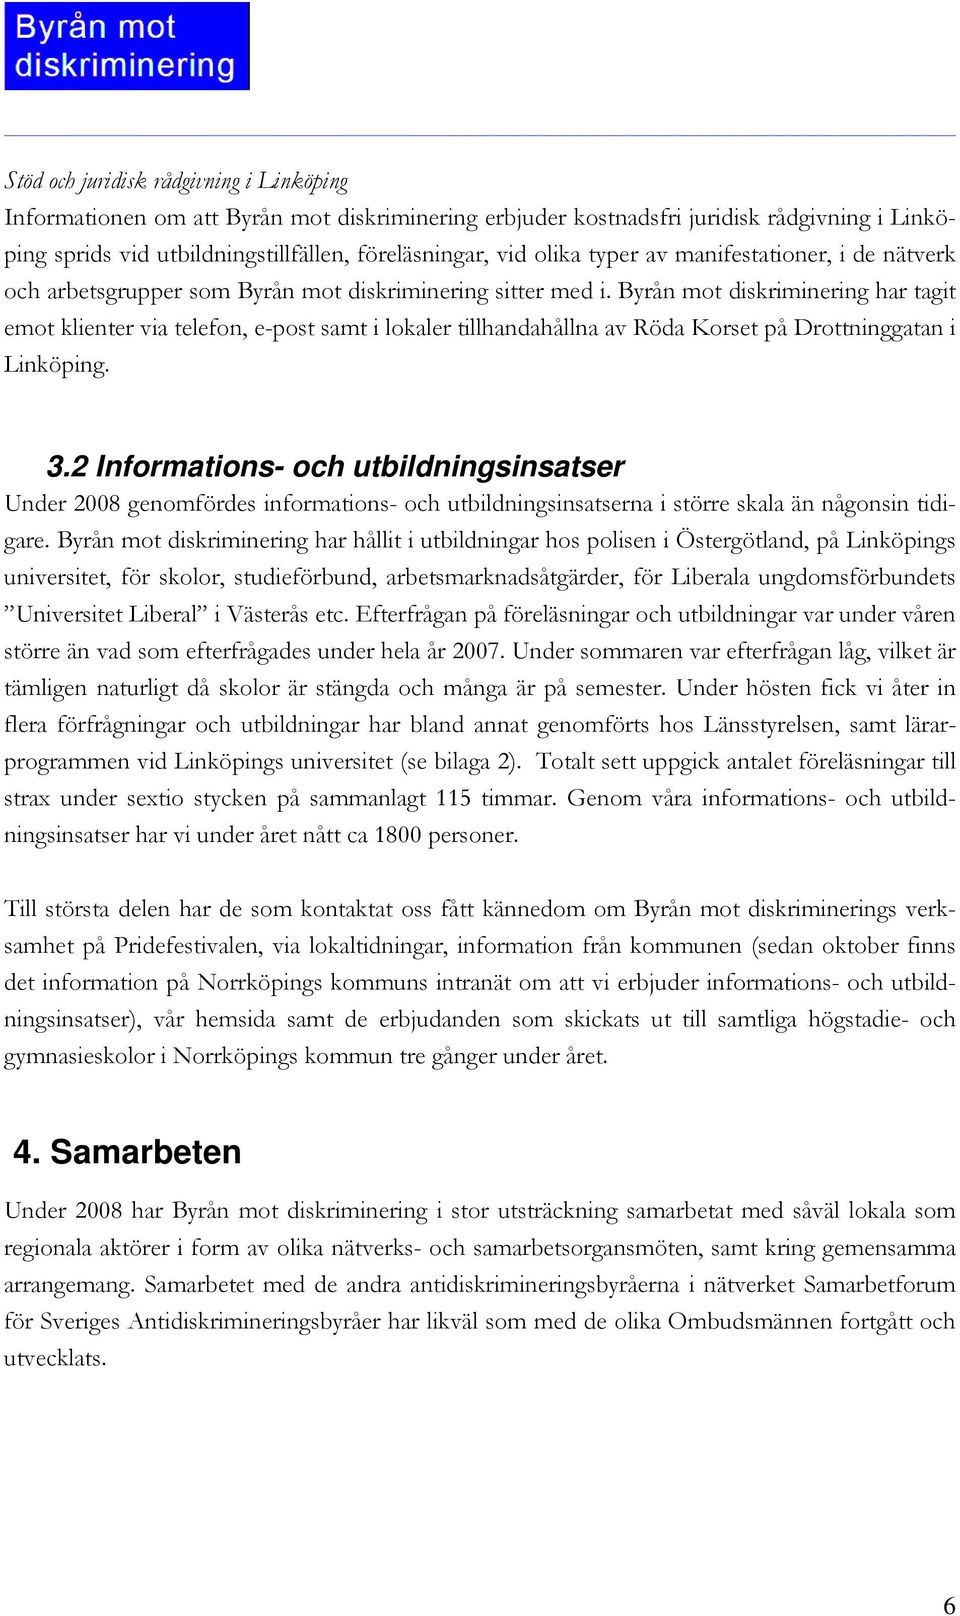 Byrån mot diskriminering har tagit emot klienter via telefon, e-post samt i lokaler tillhandahållna av Röda Korset på Drottninggatan i Linköping. 3.